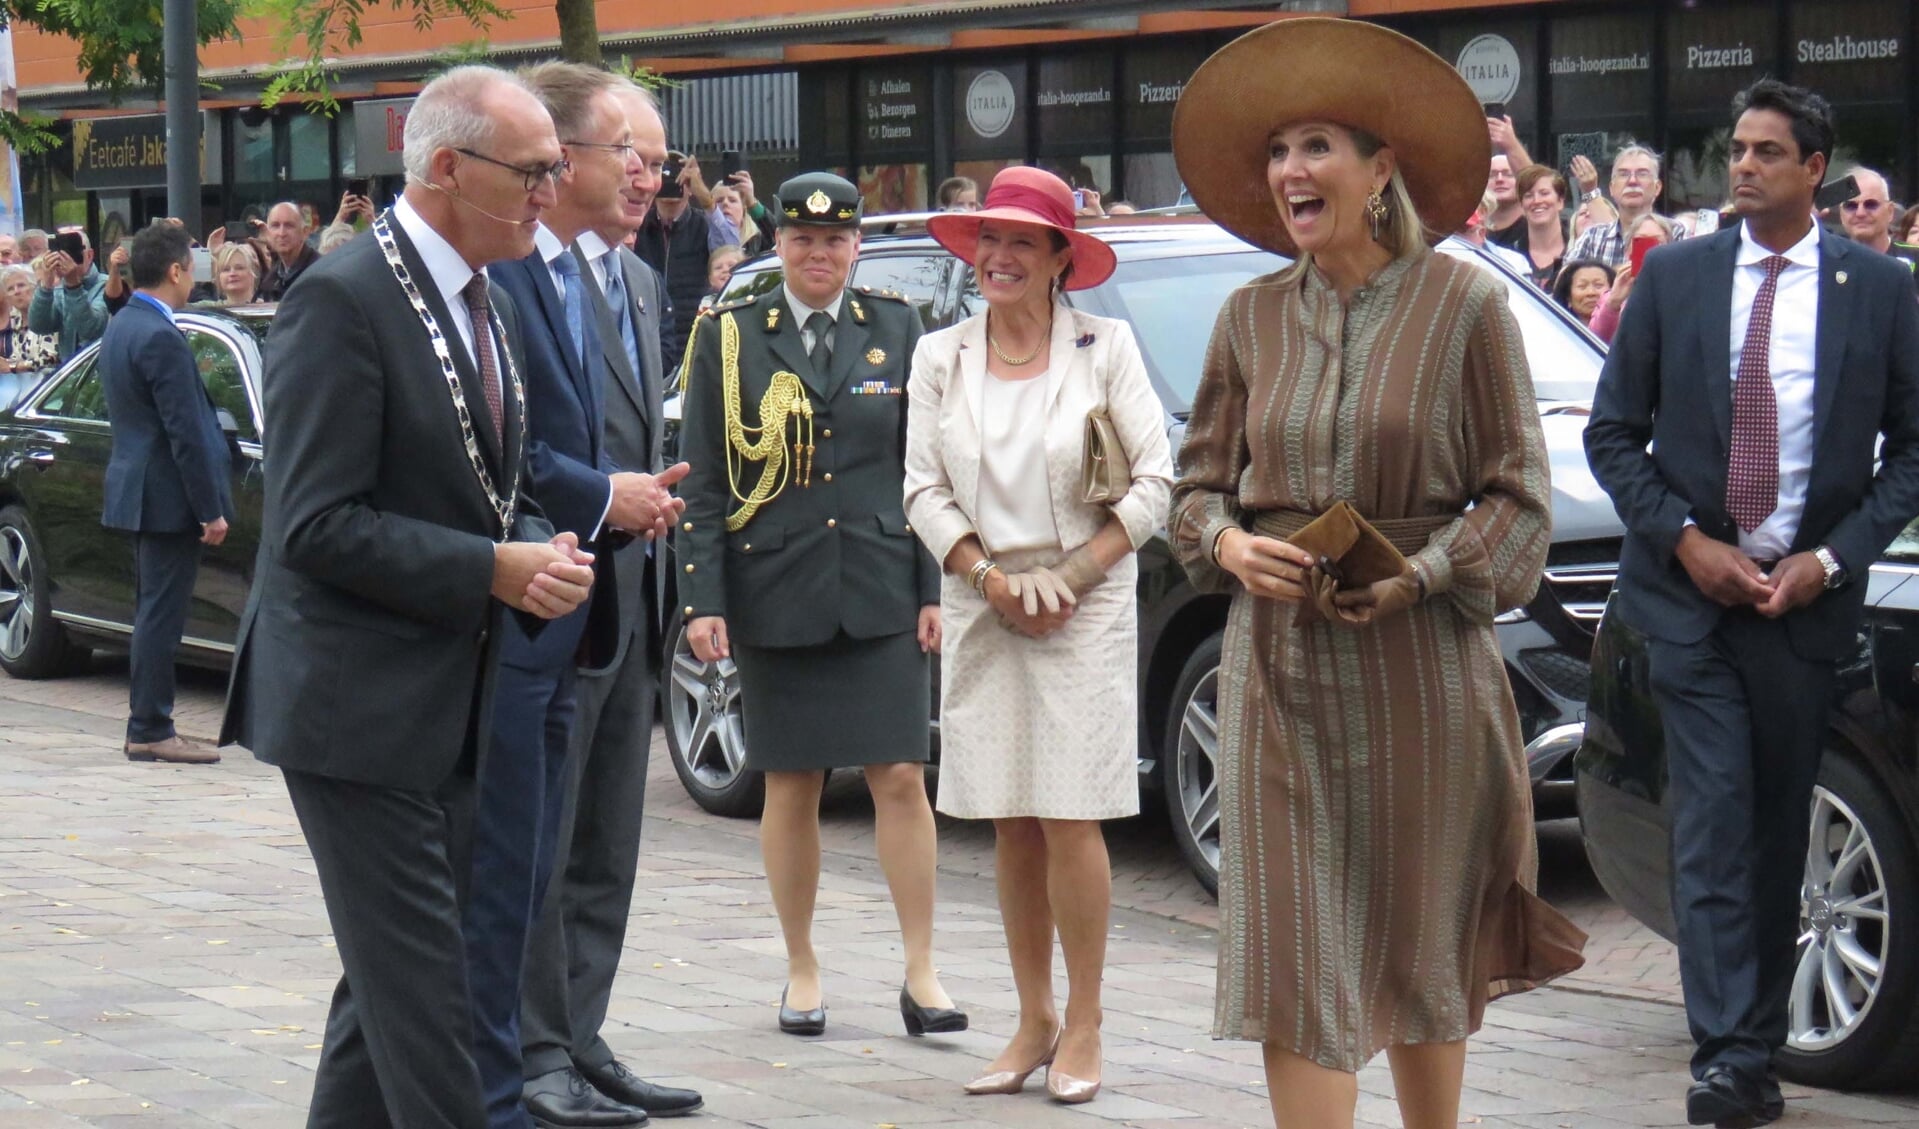 Koningin Máxima wordt bij aankomst begroet door burgemeester Adriaan Hoogendoorn, commissaris van de koning René Paas en kamerheer van de koning Jaap Wolters.